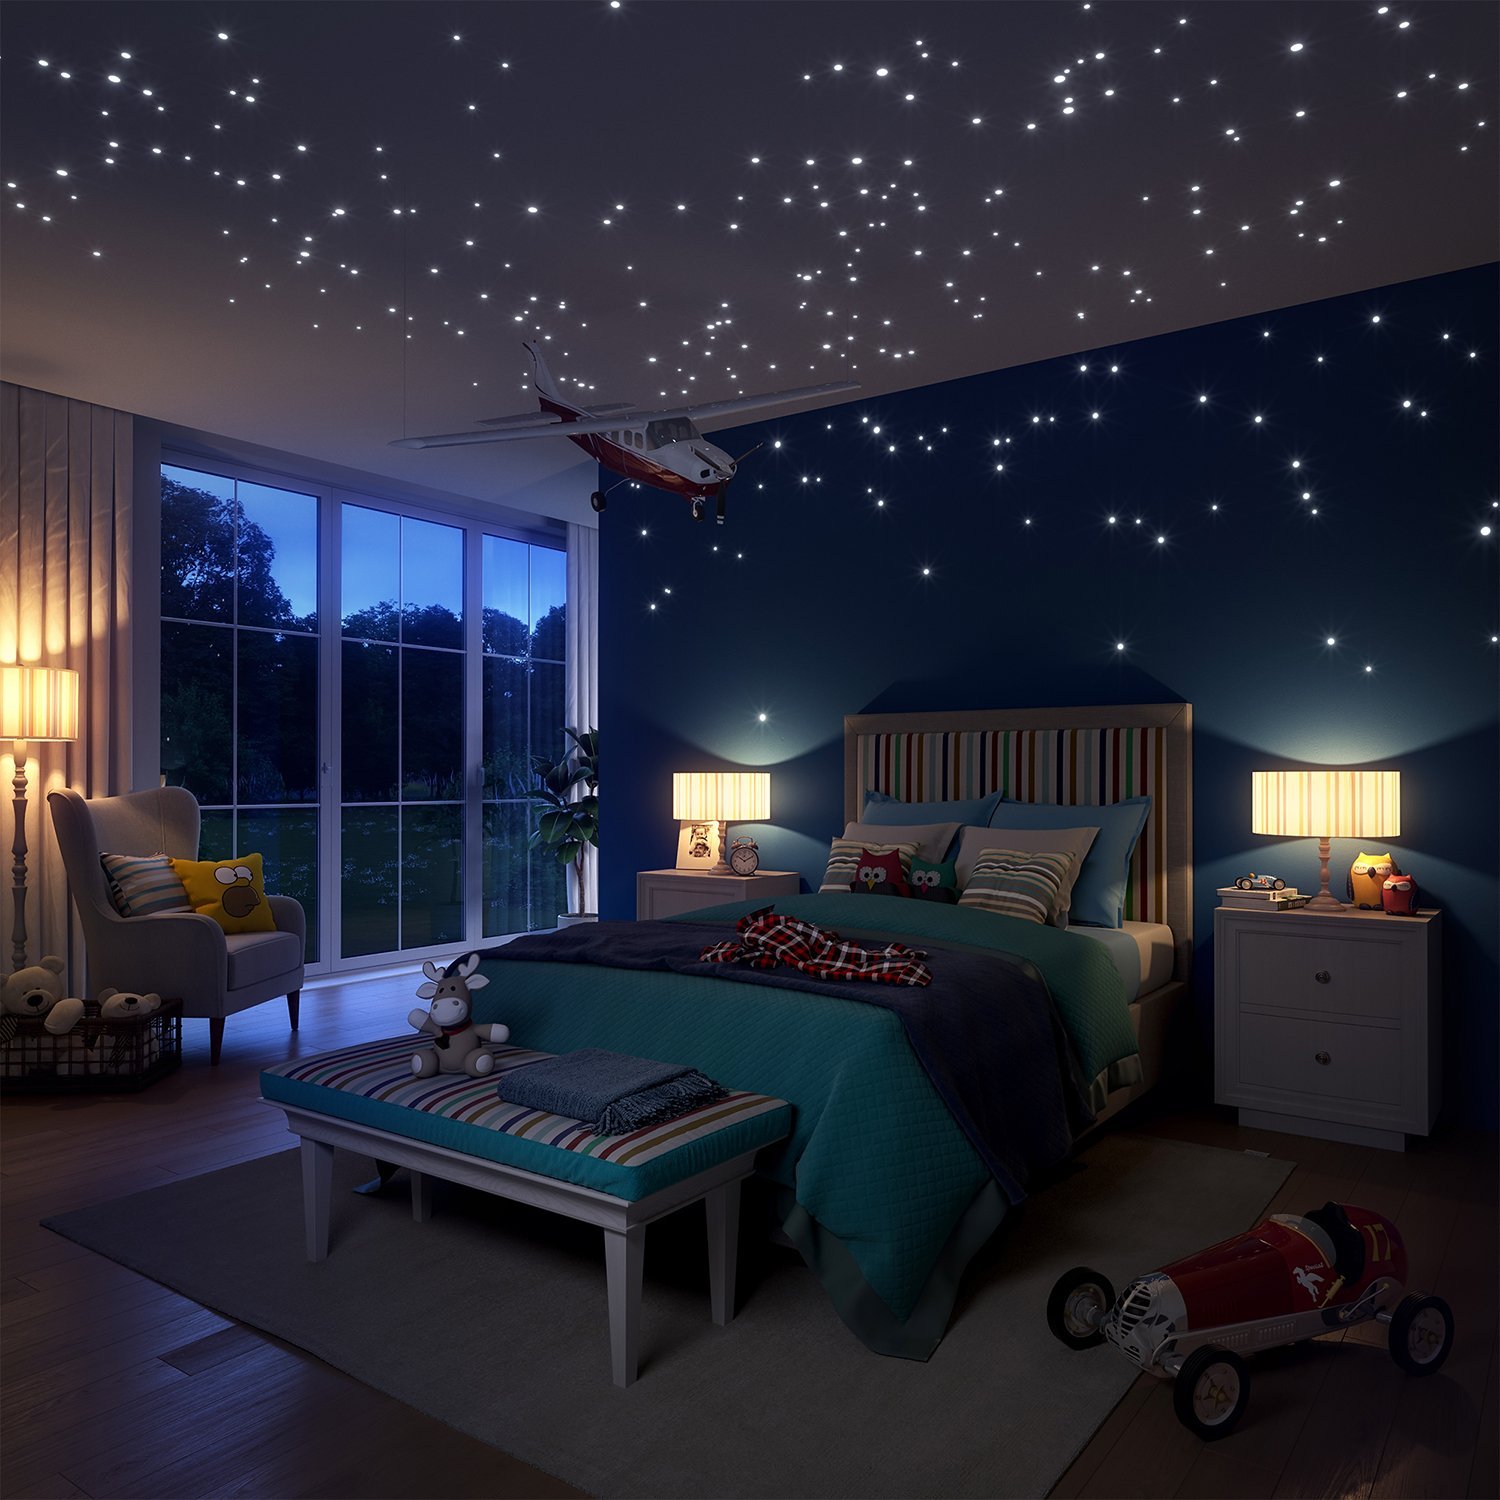 Что есть подростку ночью. Комната в космическом стиле. Натяжной потолок звездное небо. Спальня в космическом стиле. Потолок со звездами.